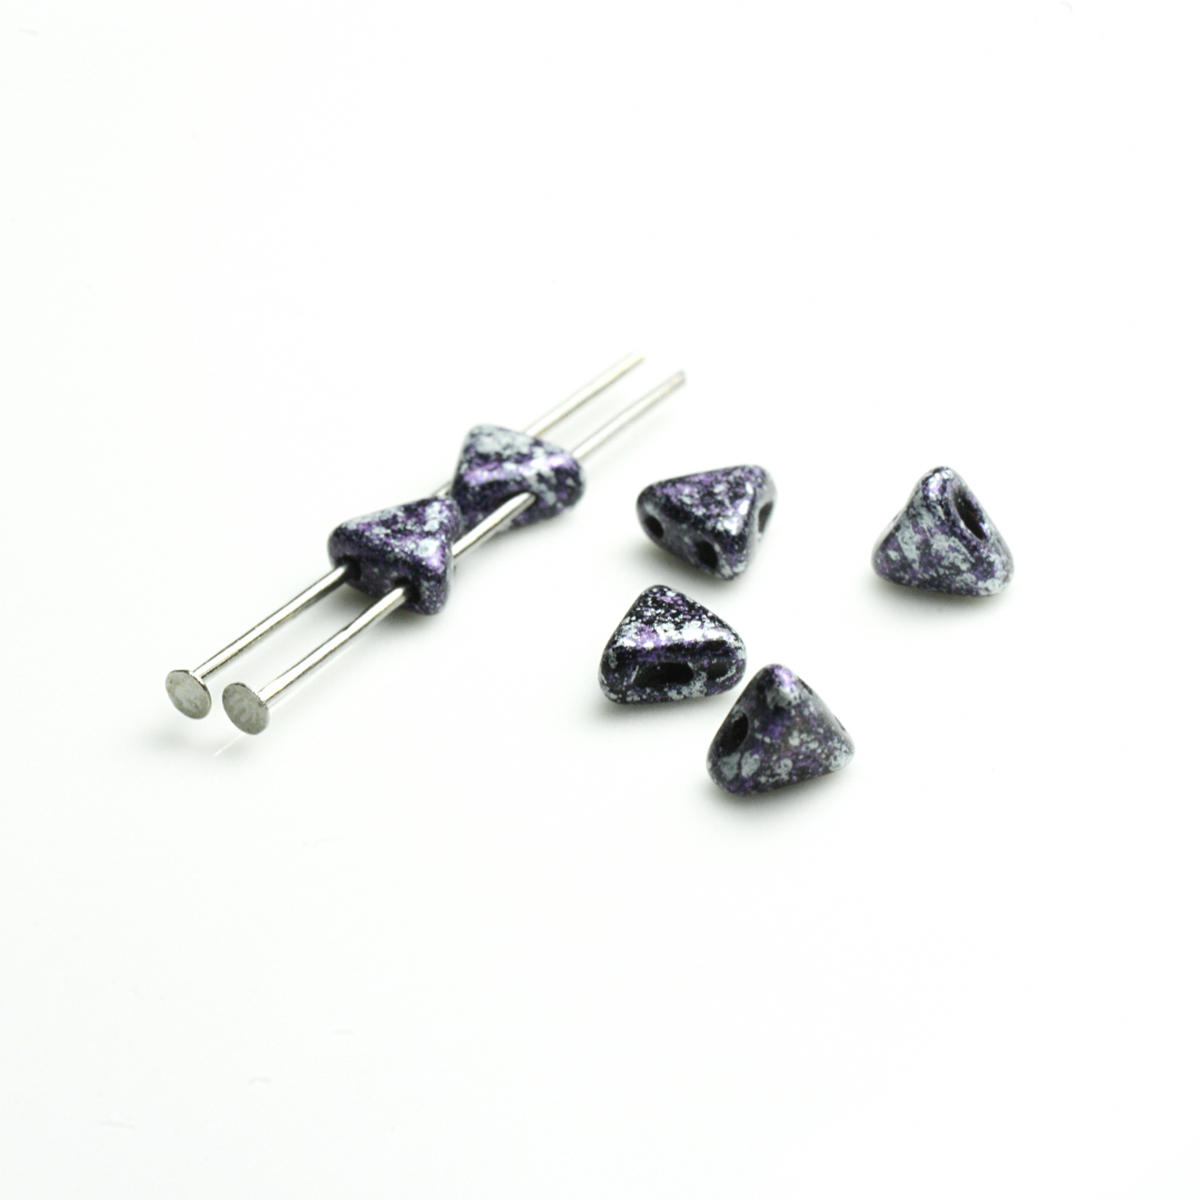 Kheops Puca Beads 10g - Tweedy Violet